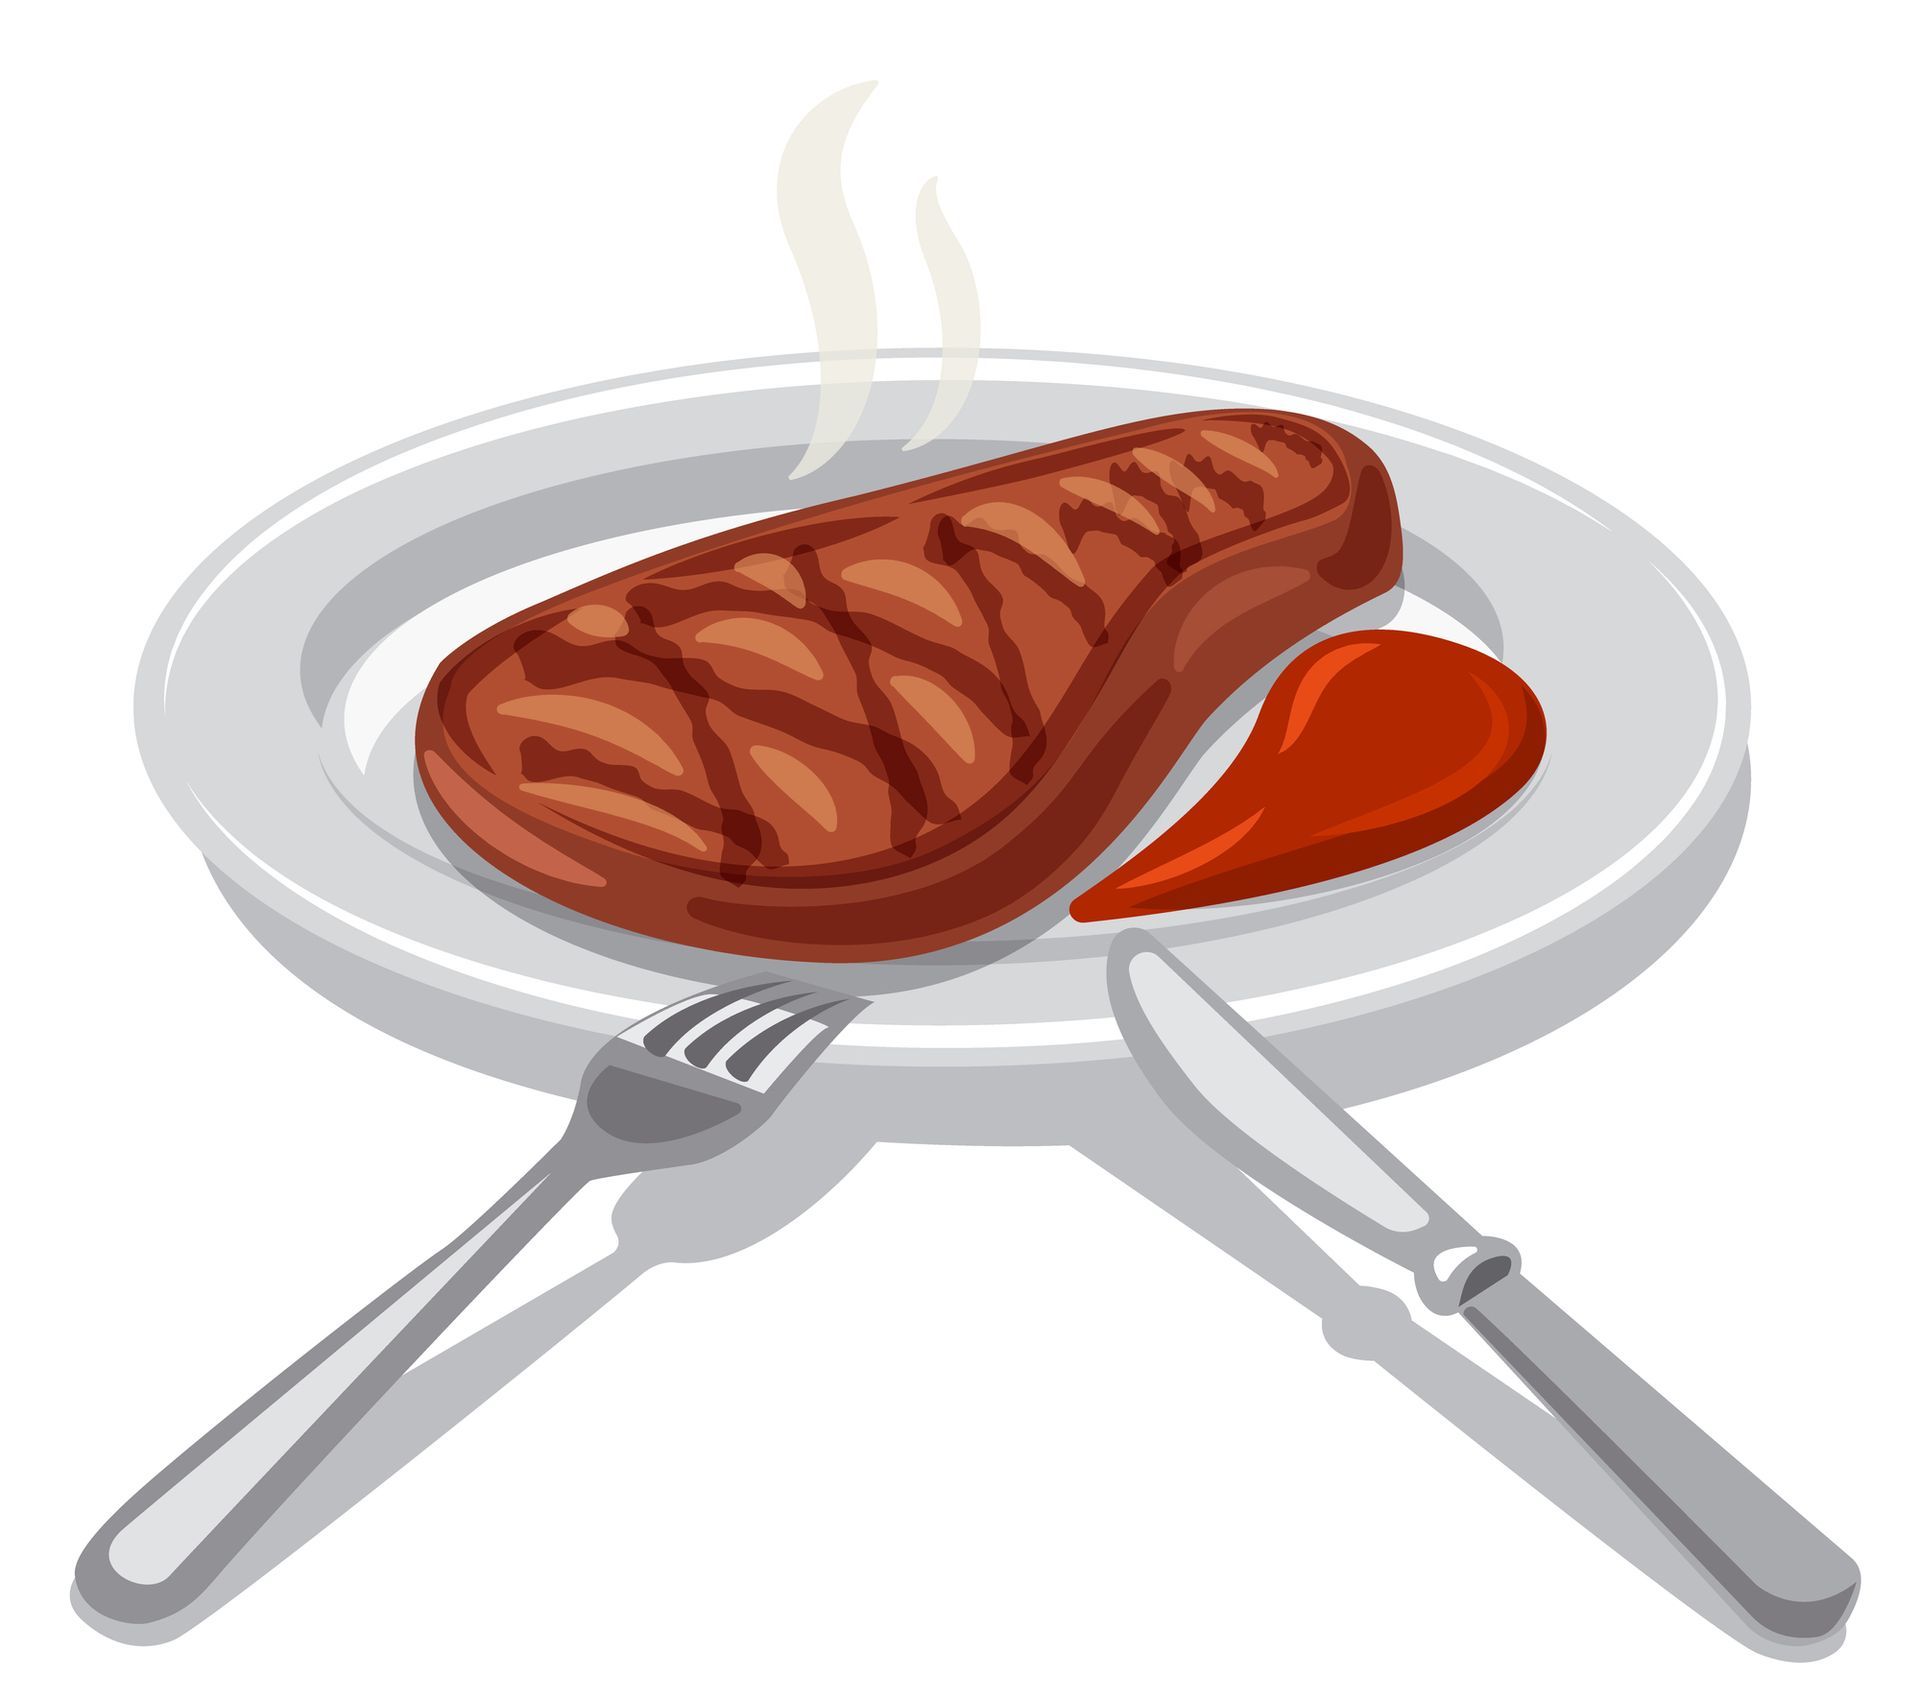 Illustratie van een bord met daarop biefstuk met saus ter illustratie van bijvoeglijke naamwoorden. 